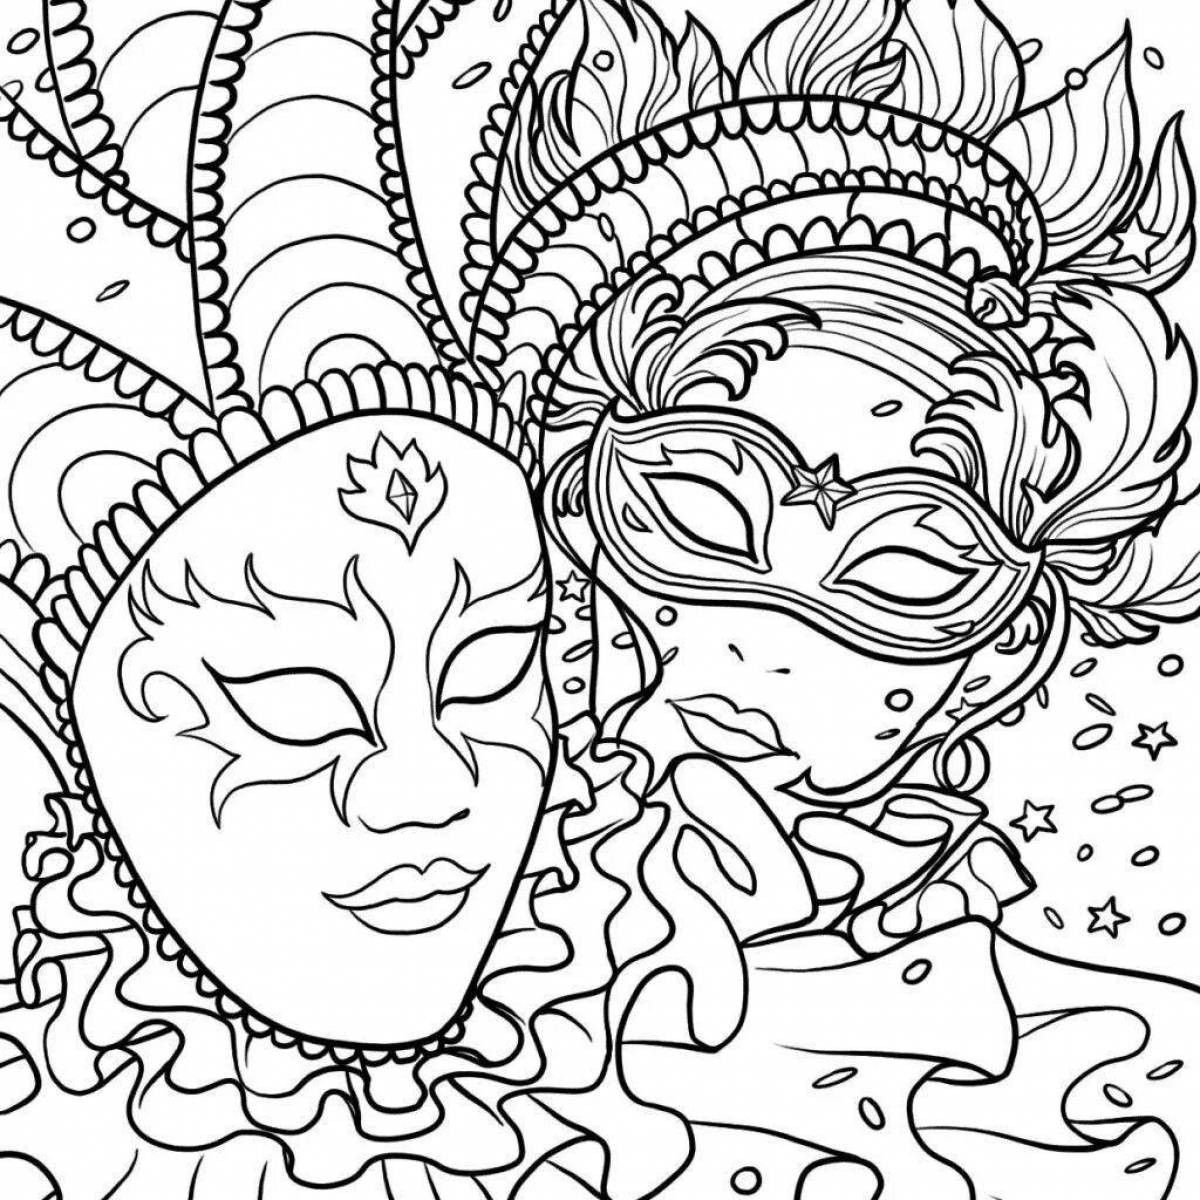 Coloring page shining masquerade